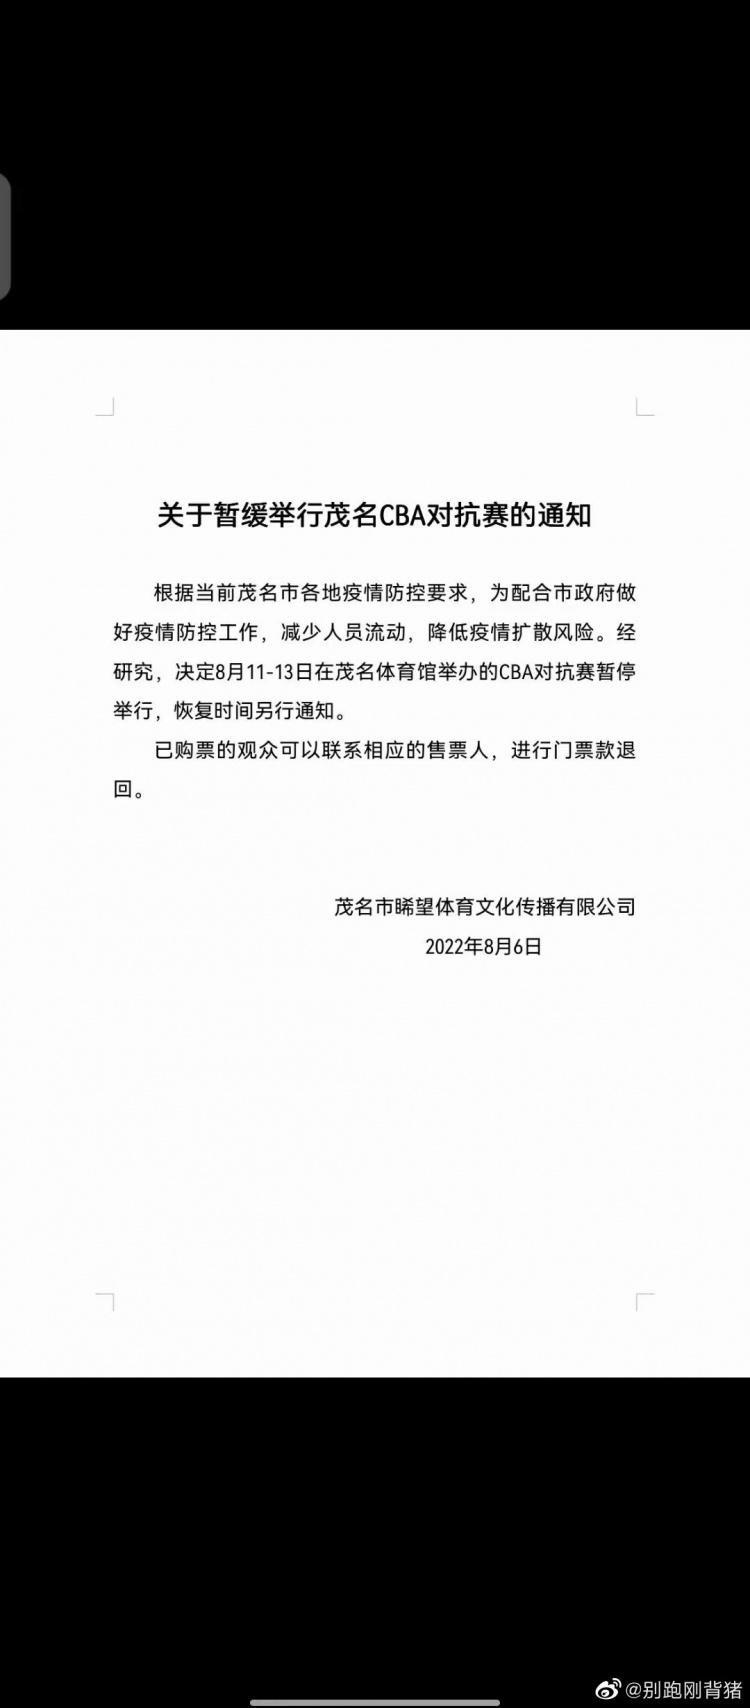 媒体人：因疫情防控原因 暂停举行在茂名的国青&上海&深圳热身赛